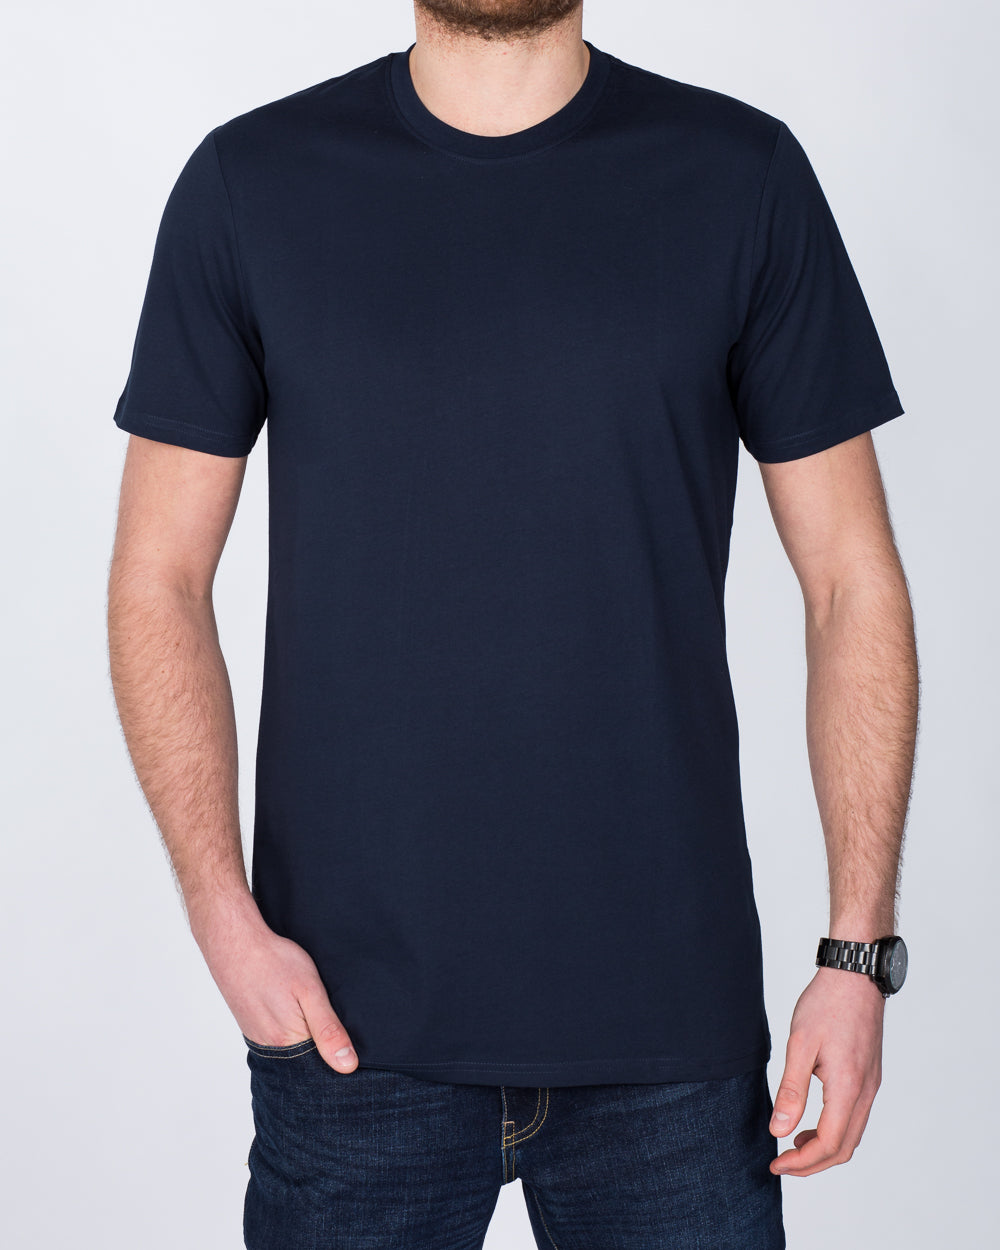 Girav Sydney Extra Tall T-Shirt (navy)